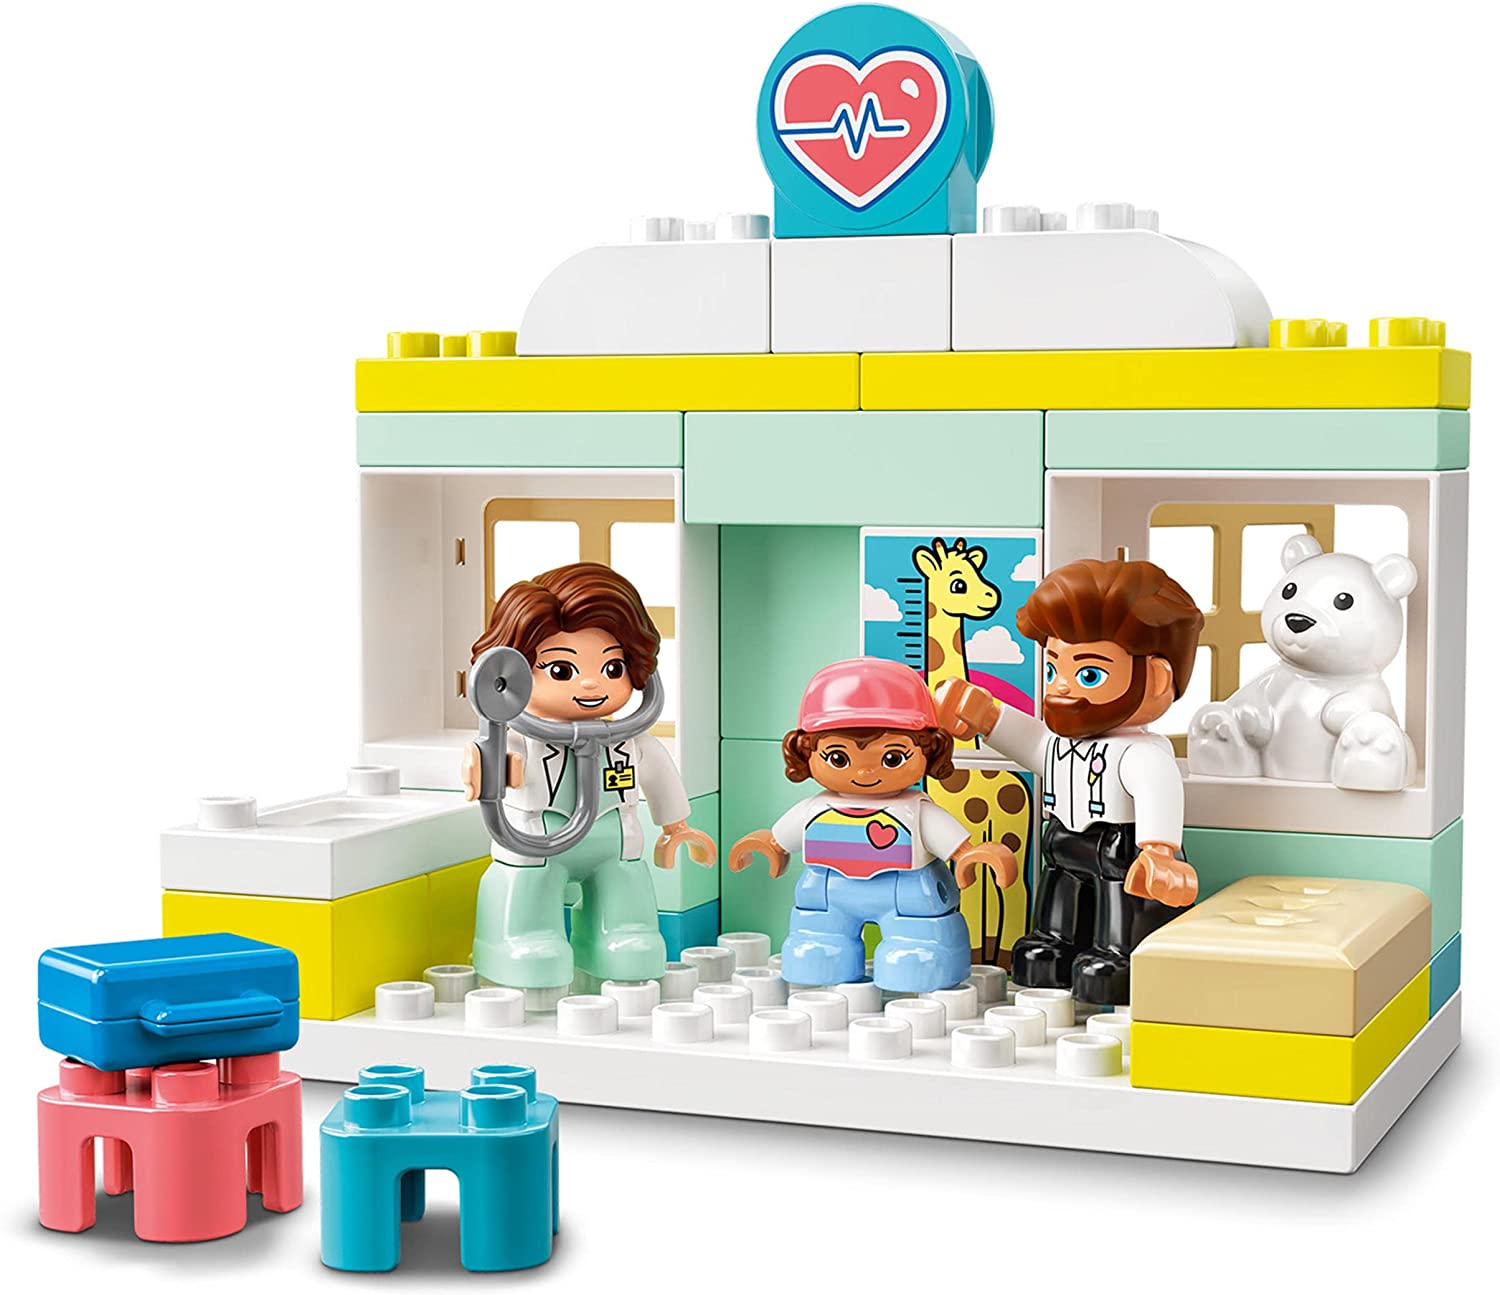 LEGO-DUPLO-Town-wizyta-u-lekarza-10968-2